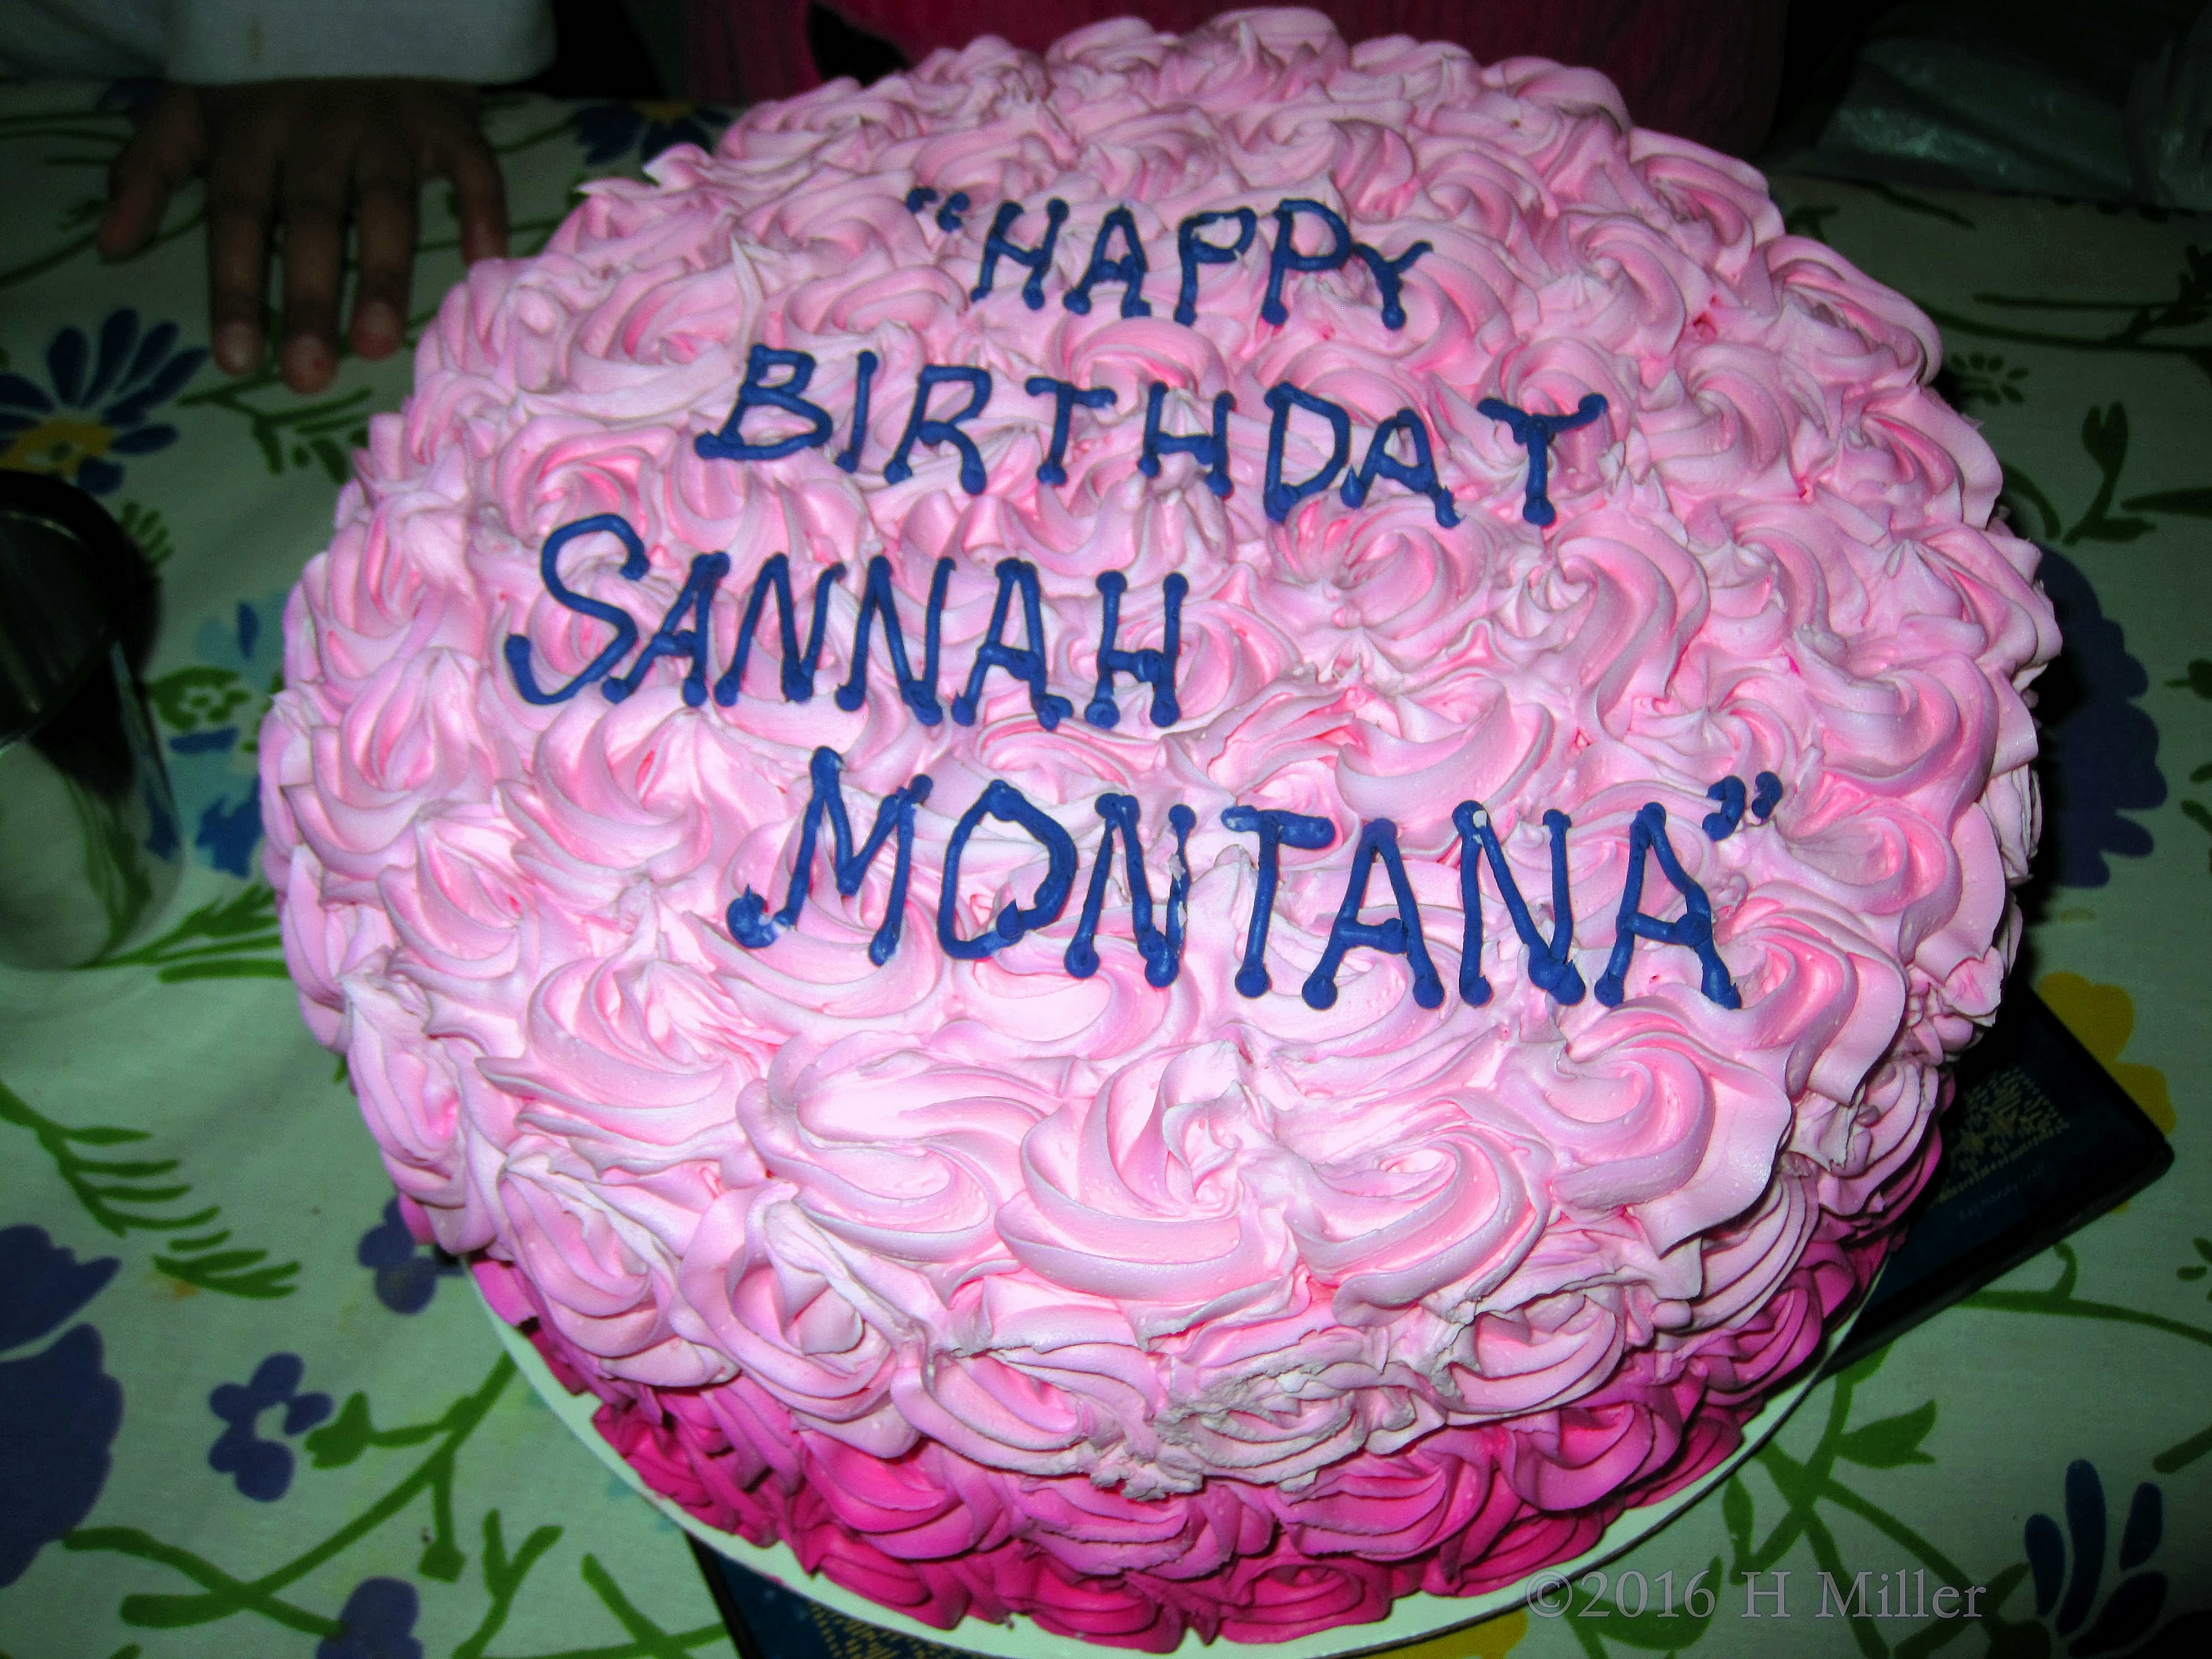 Happy Spa Birthday Sannah Montana!